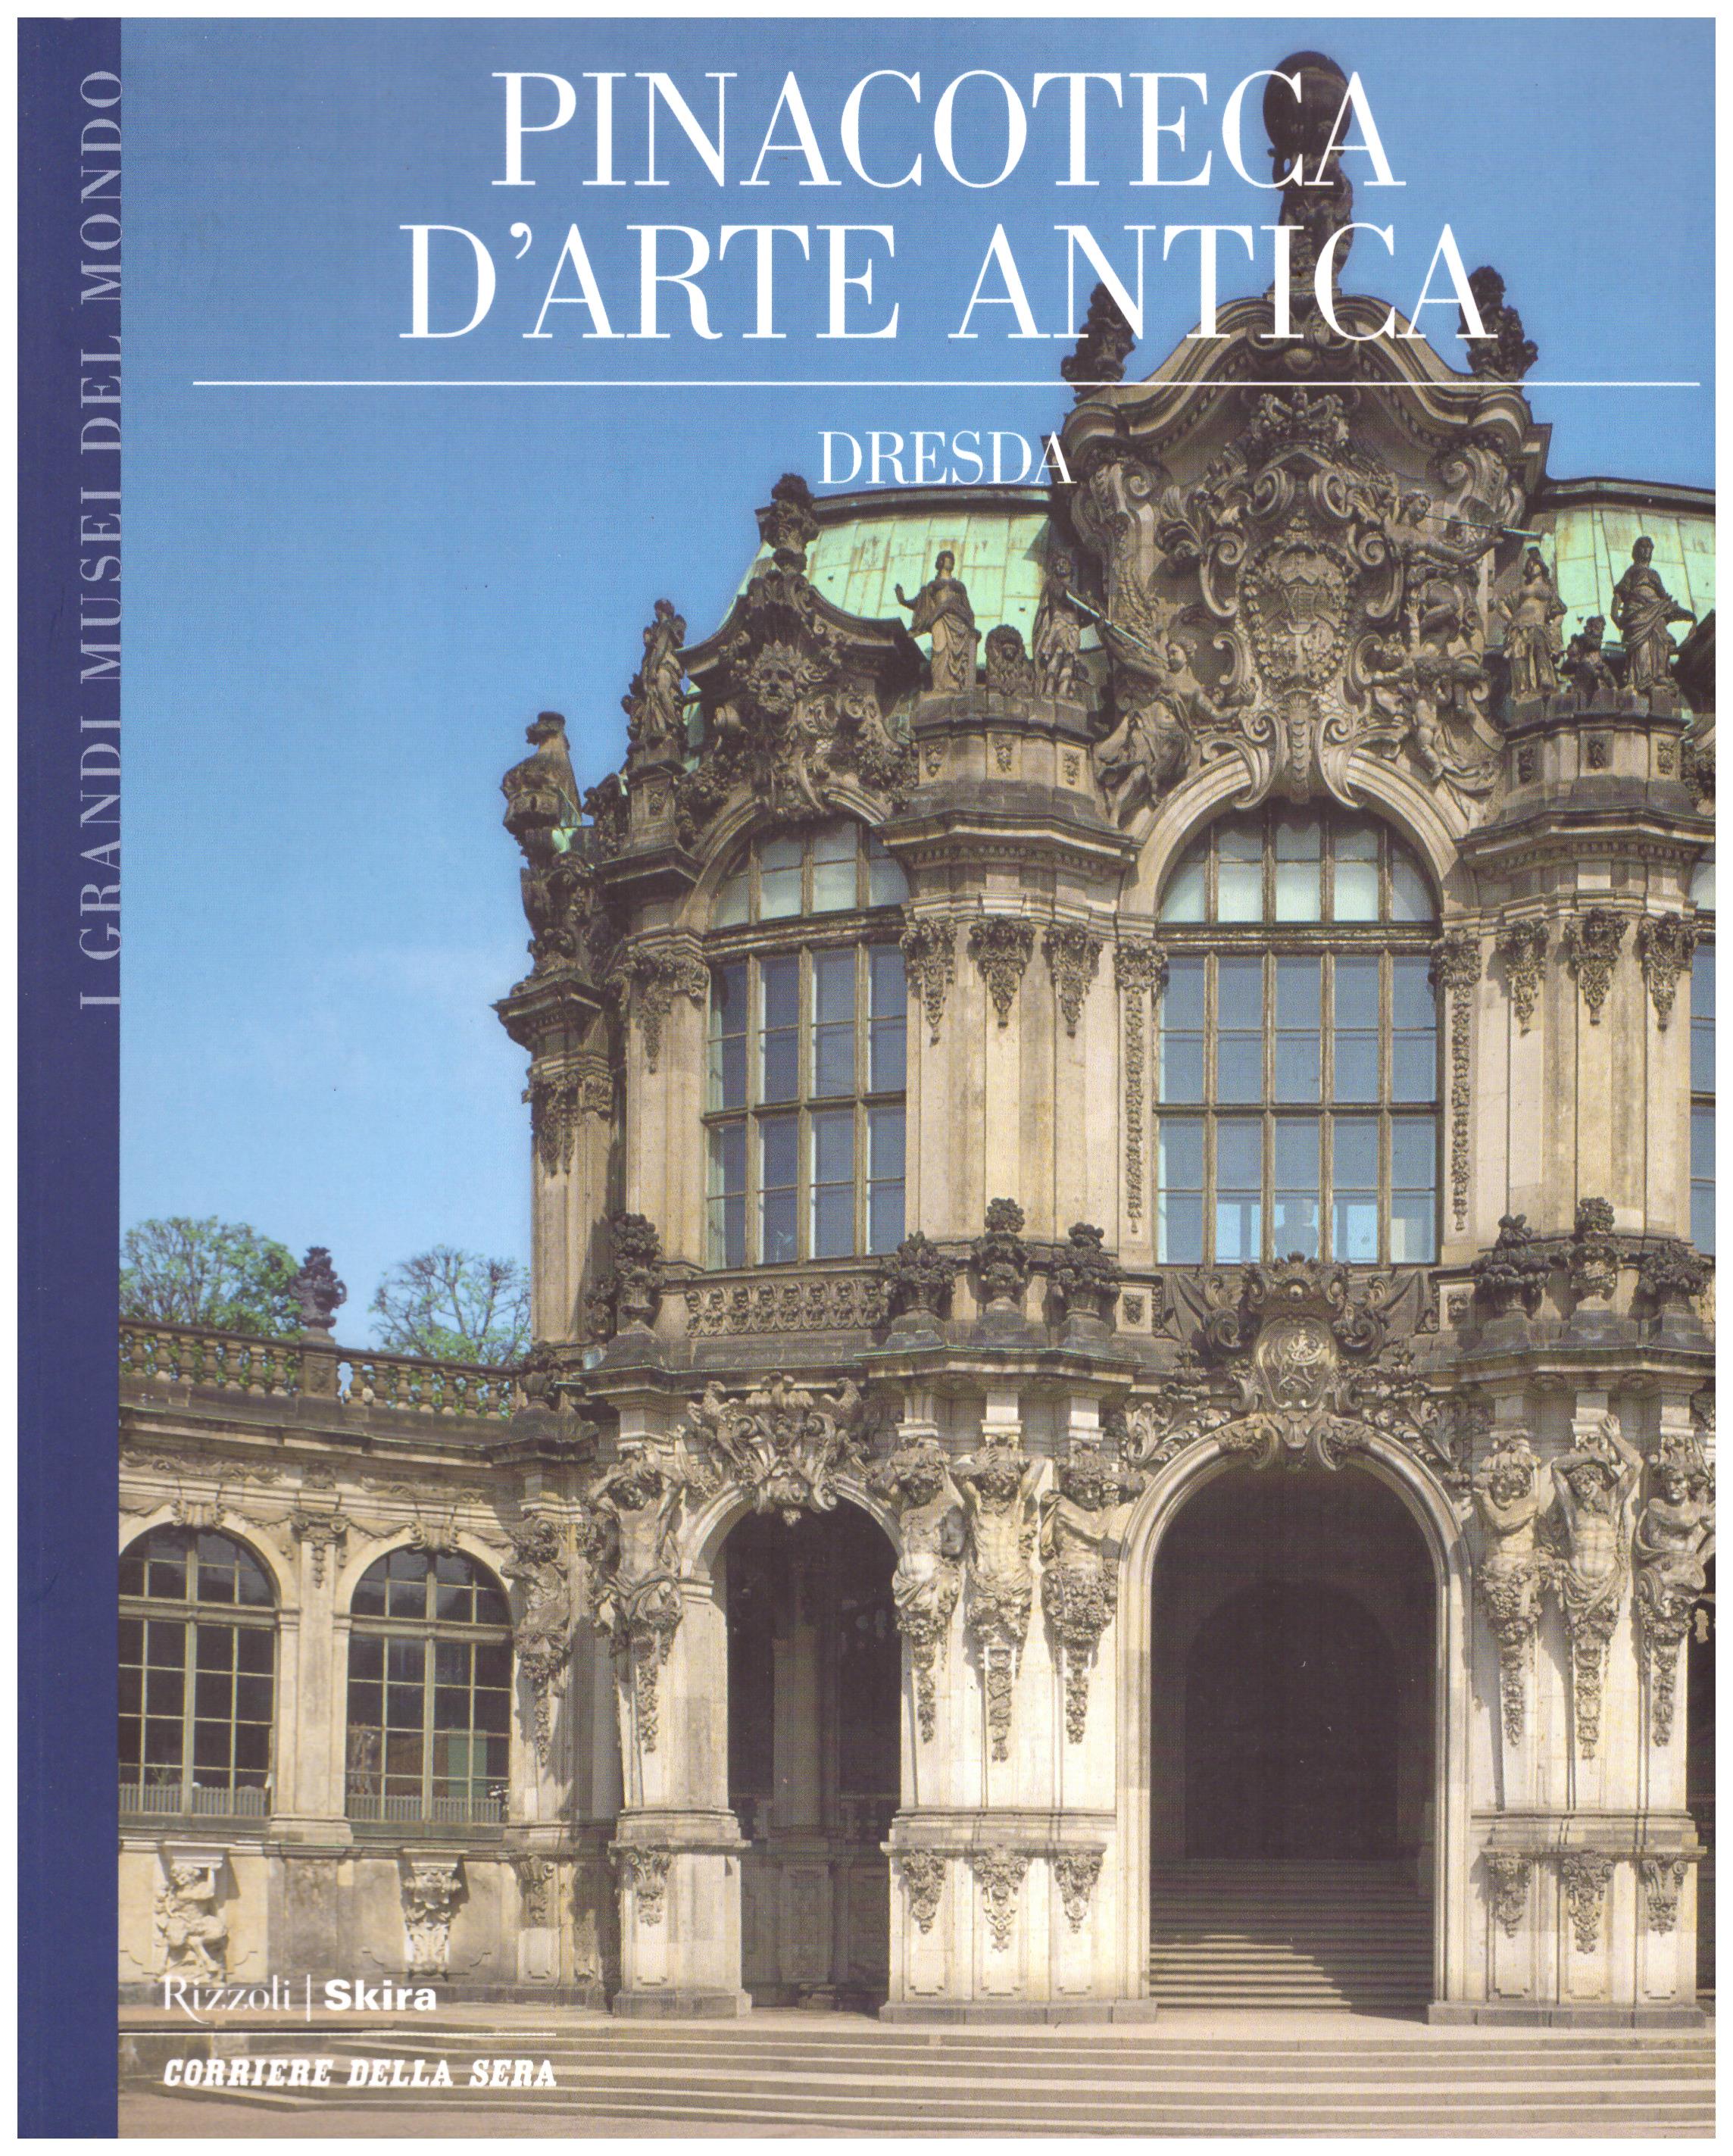 Titolo: I grandi musei del mondo, Pinacoteca d'arte antica Dresda Autore : AA.VV.  Editore: Rizzoli Skira, Corriere della Sera 2006